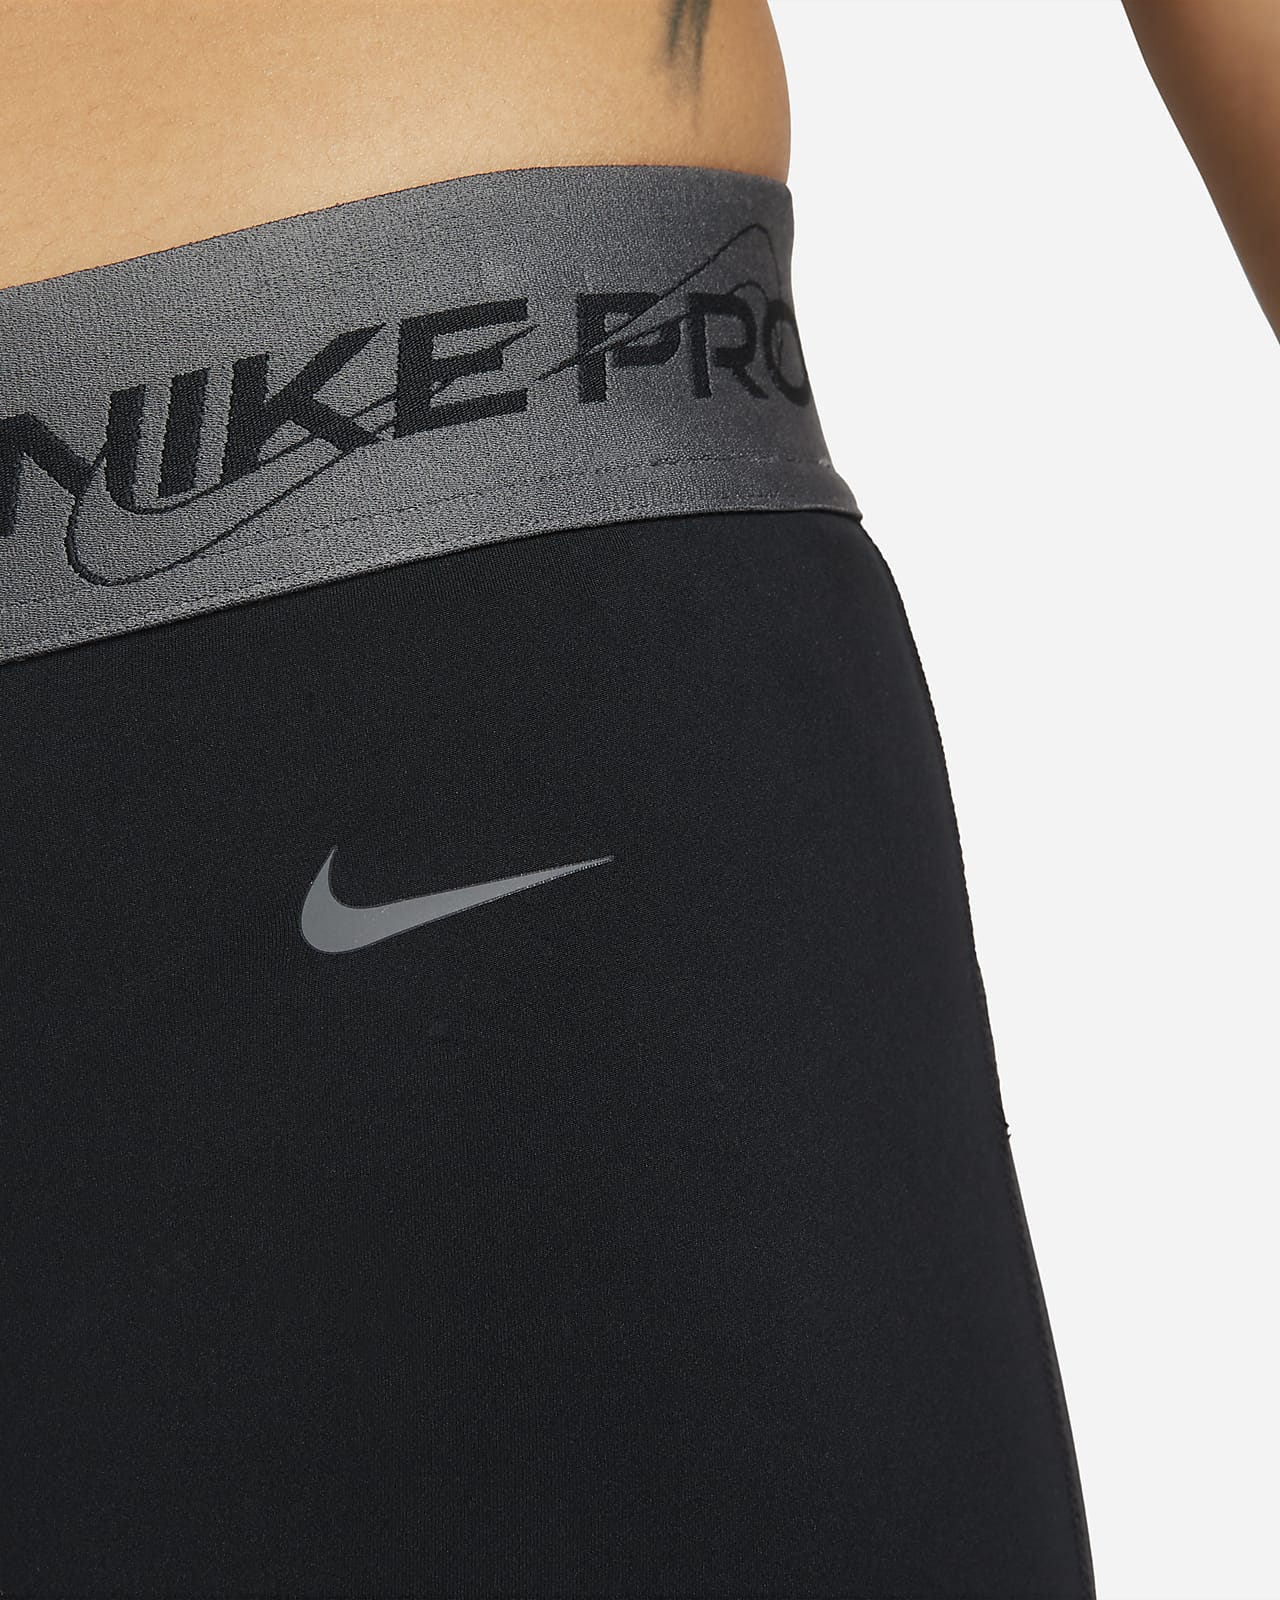 Nike, Pro Leggings - Obsidian/White